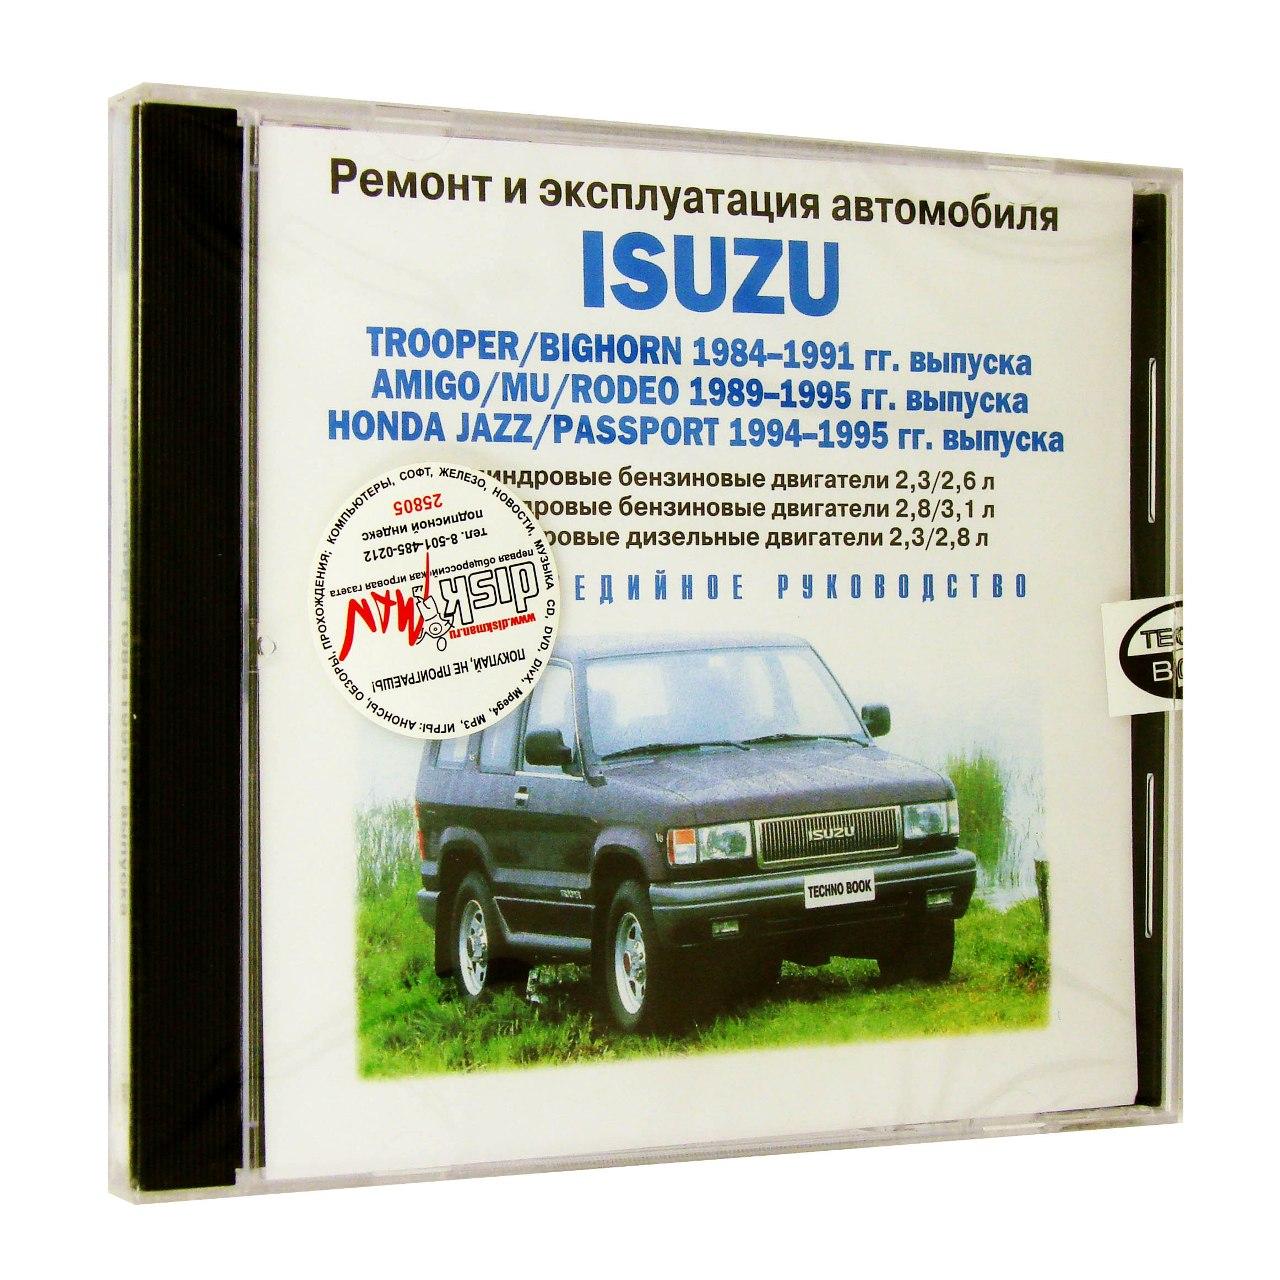 Компьютерный компакт-диск Isuzu Trooper 1984-1995г. ремонт и эксплуатация автомобиля (ПК), фирма RMG Multimedia, 1CD